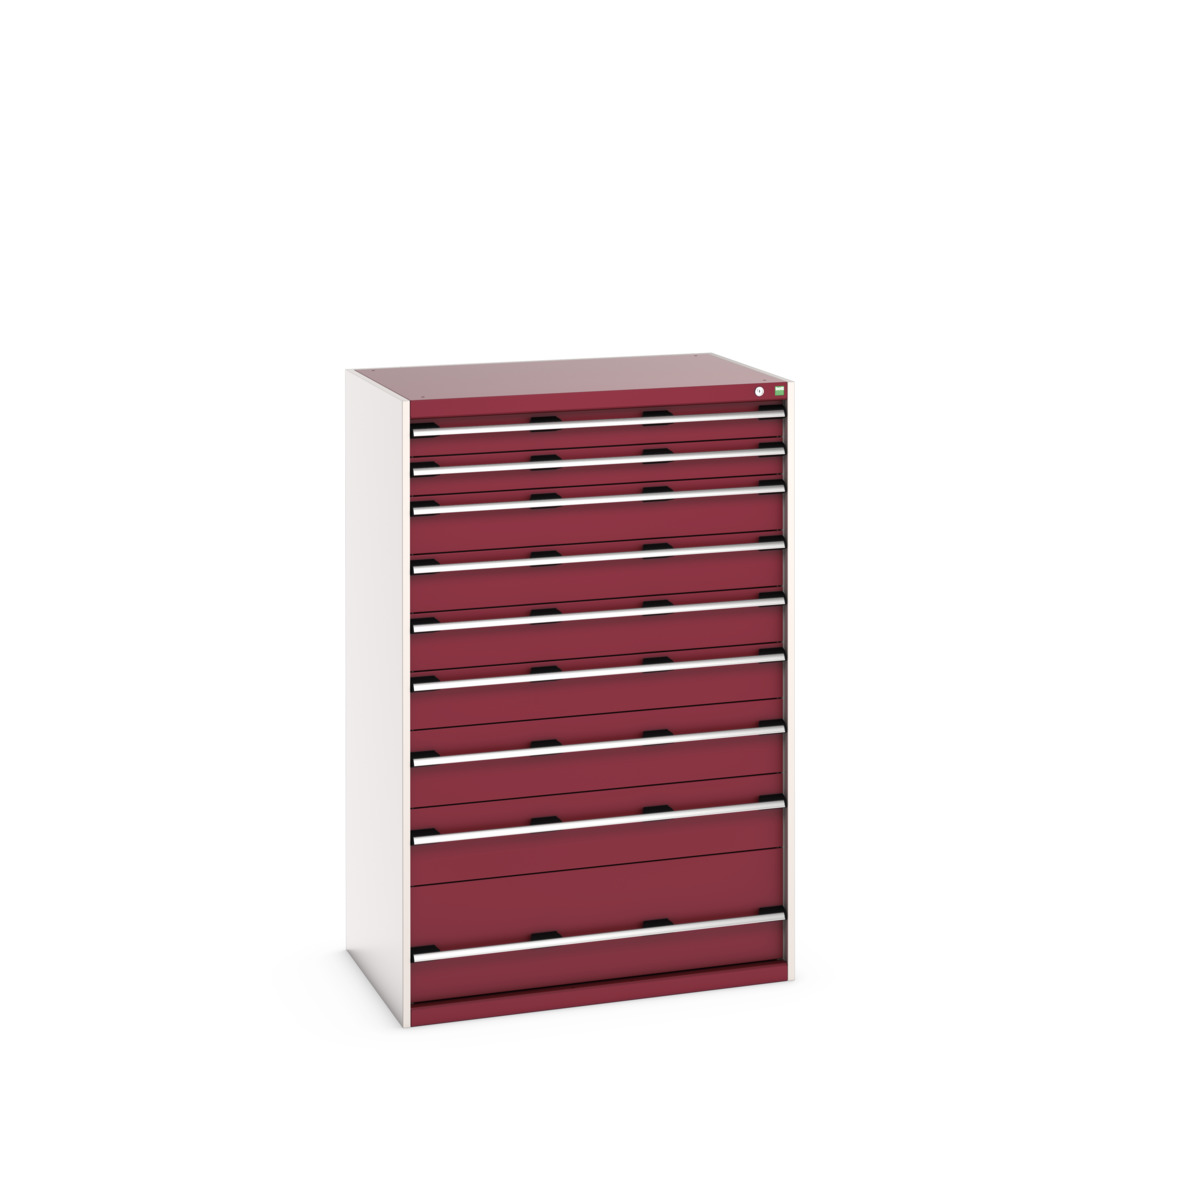 40029035.24V - cubio drawer cabinet